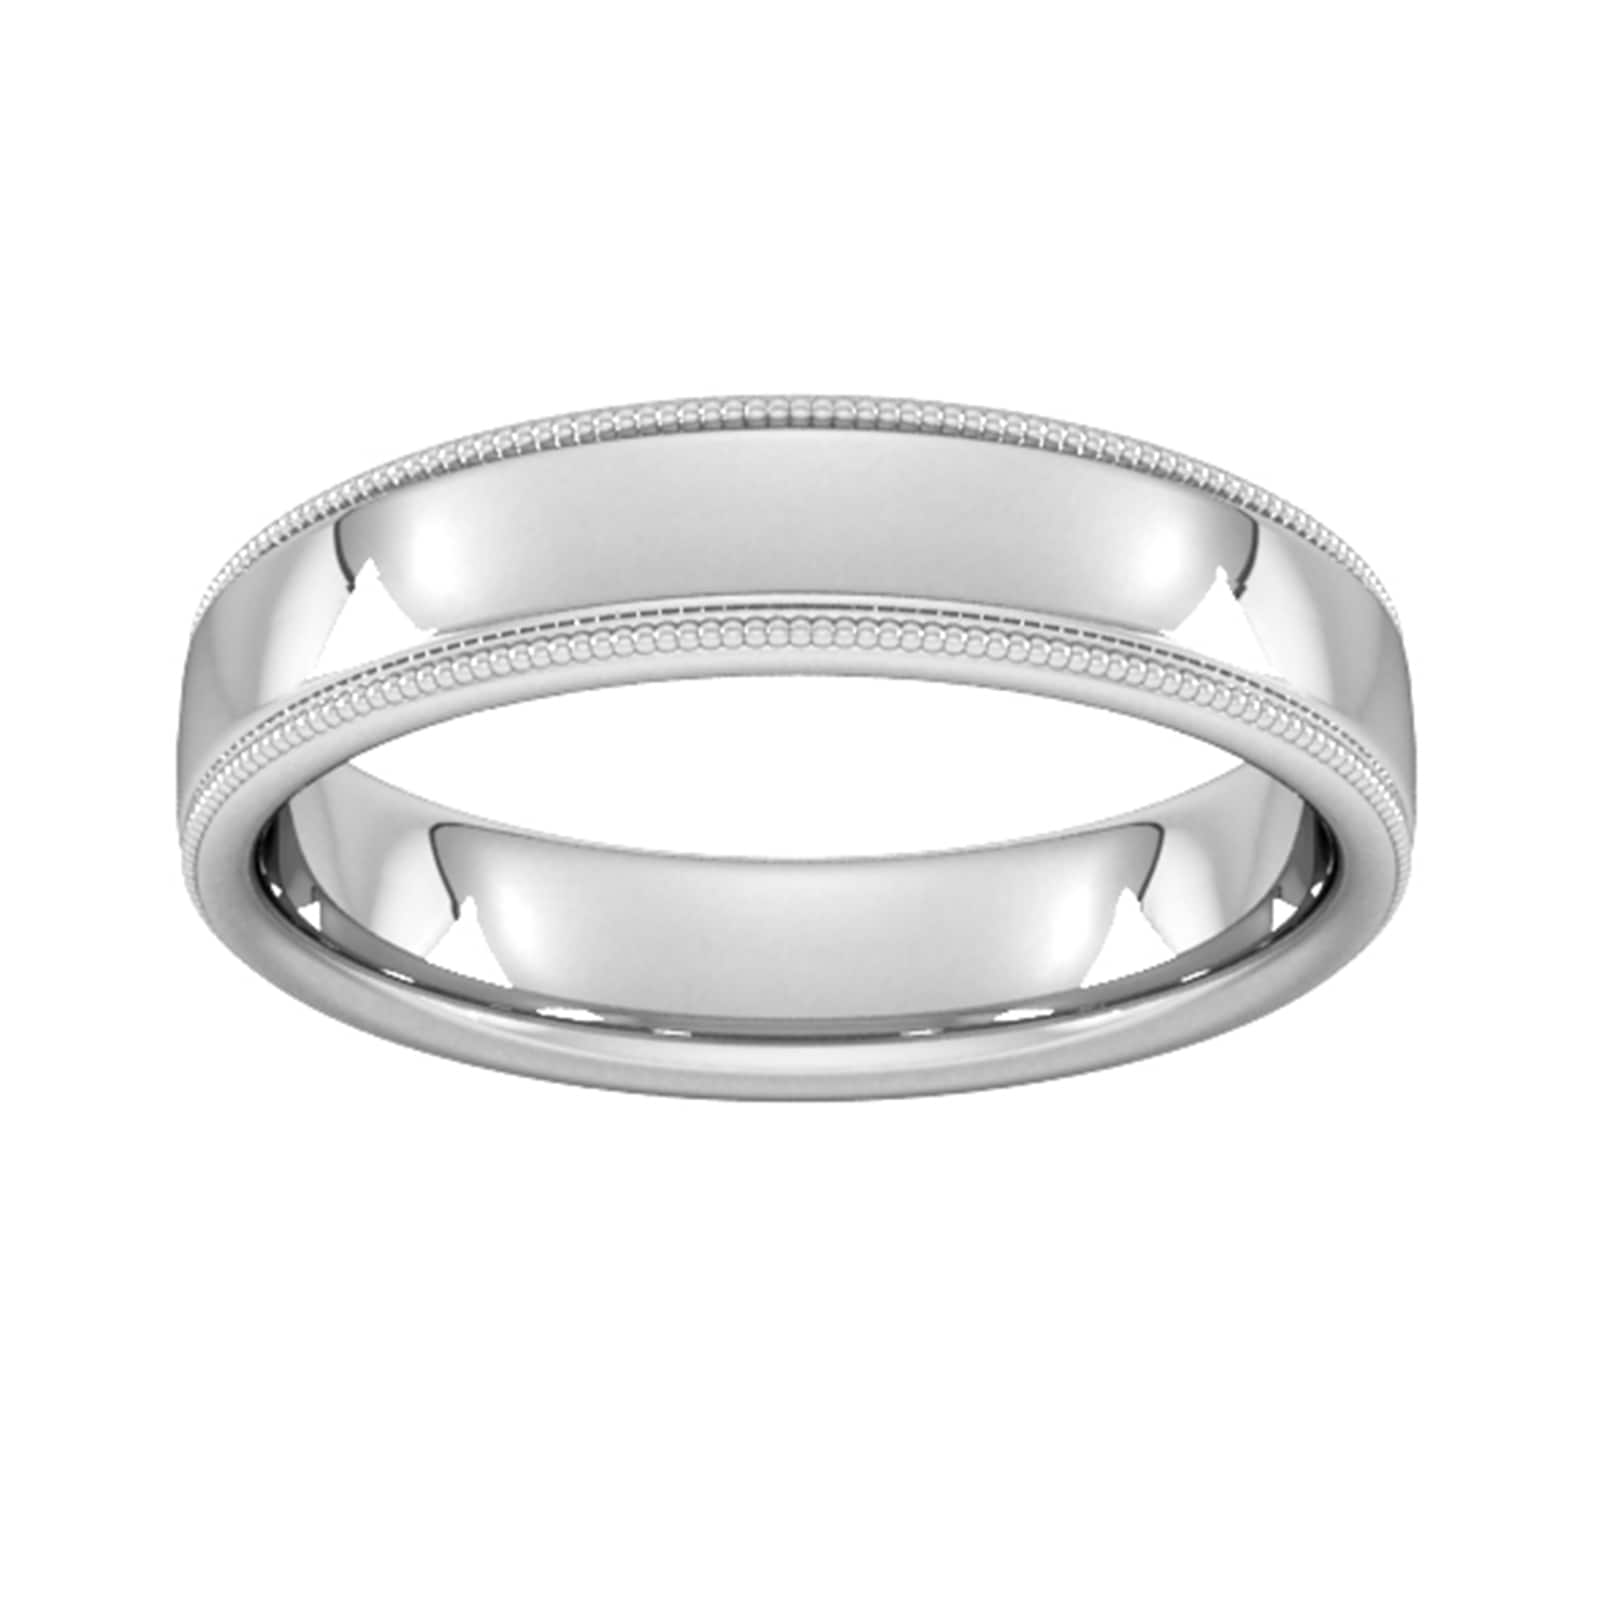 5mm D Shape Standard Milgrain Edge Wedding Ring In 9 Carat White Gold - Ring Size T